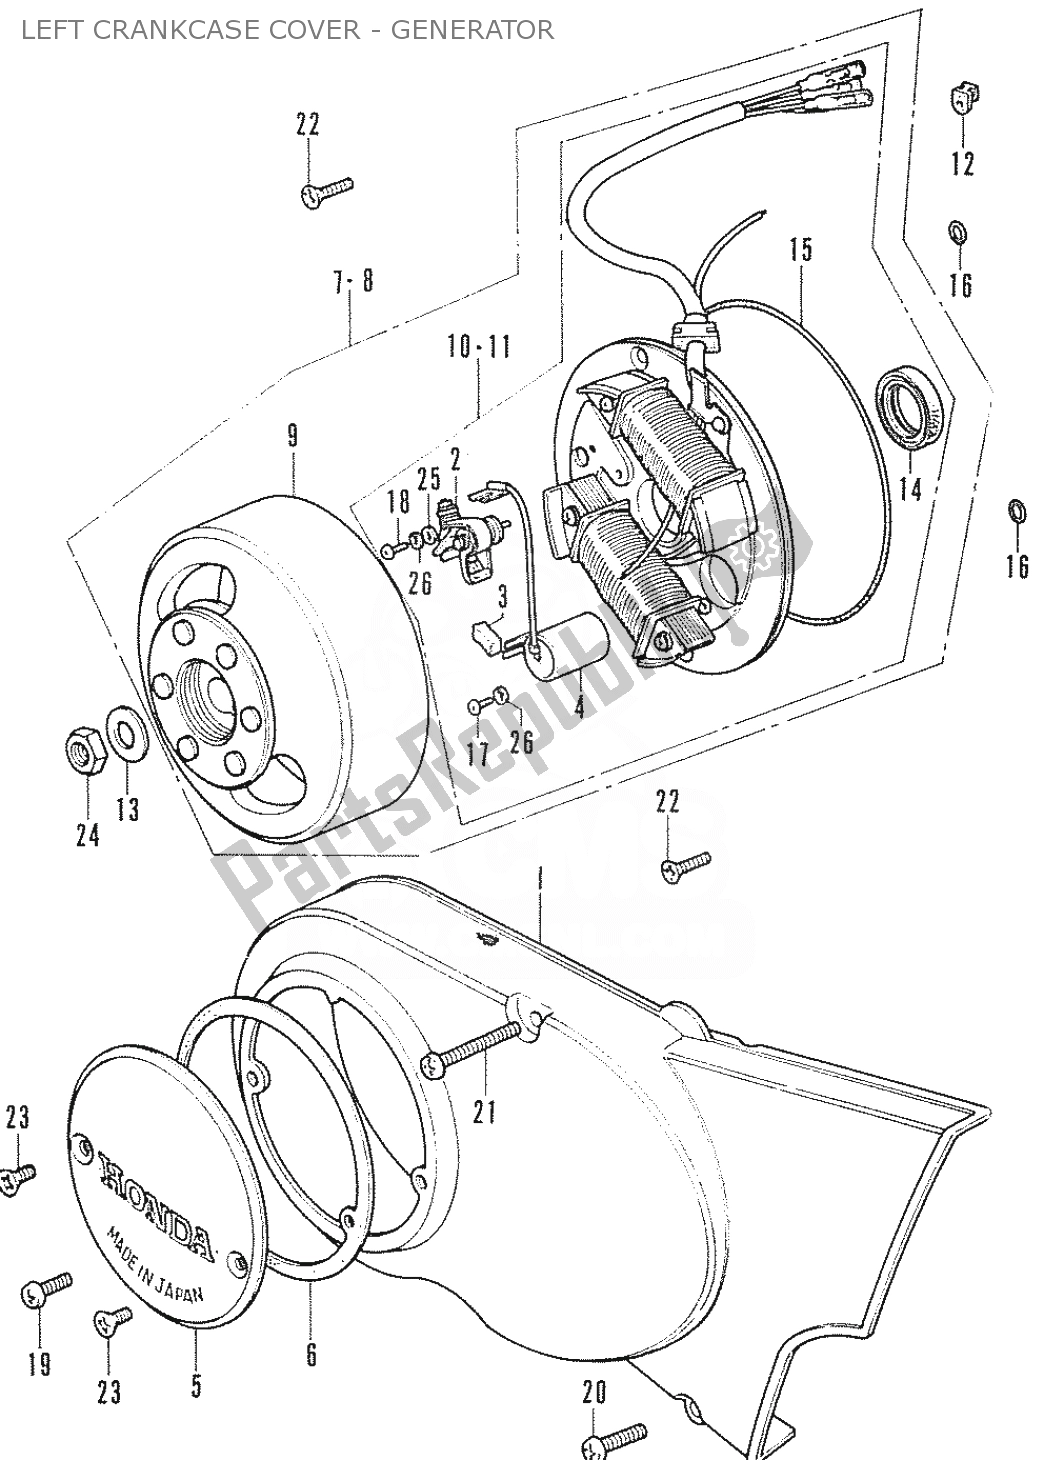 Alle onderdelen voor de Left Crankcase Cover - Generator van de Honda CF 70 Chaly 1950 - 2023